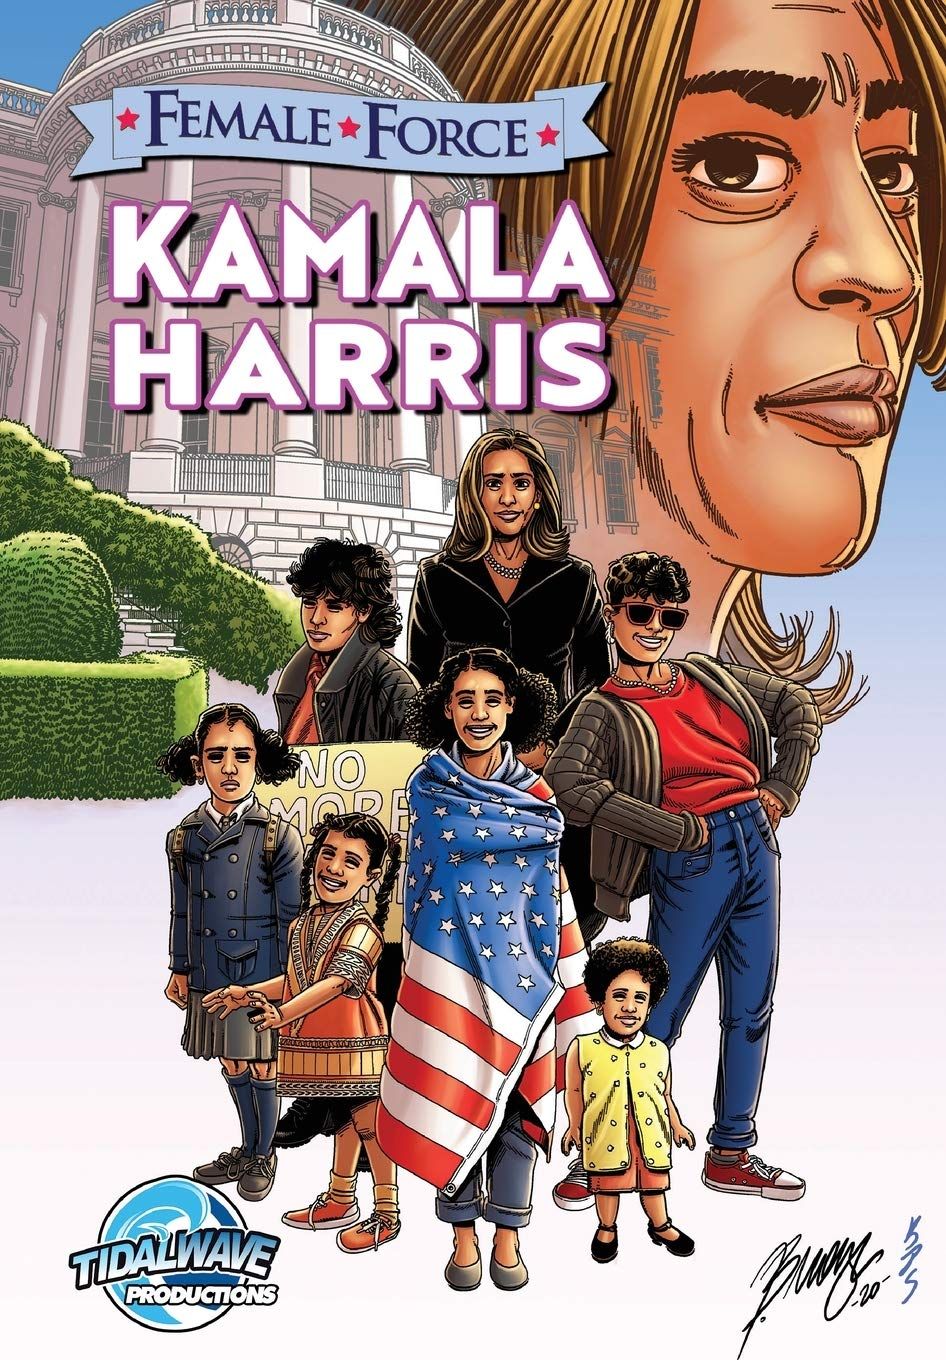 نائبة الرئيس الأميركي كمالا هاريس على غلاف المجلة - Amazon